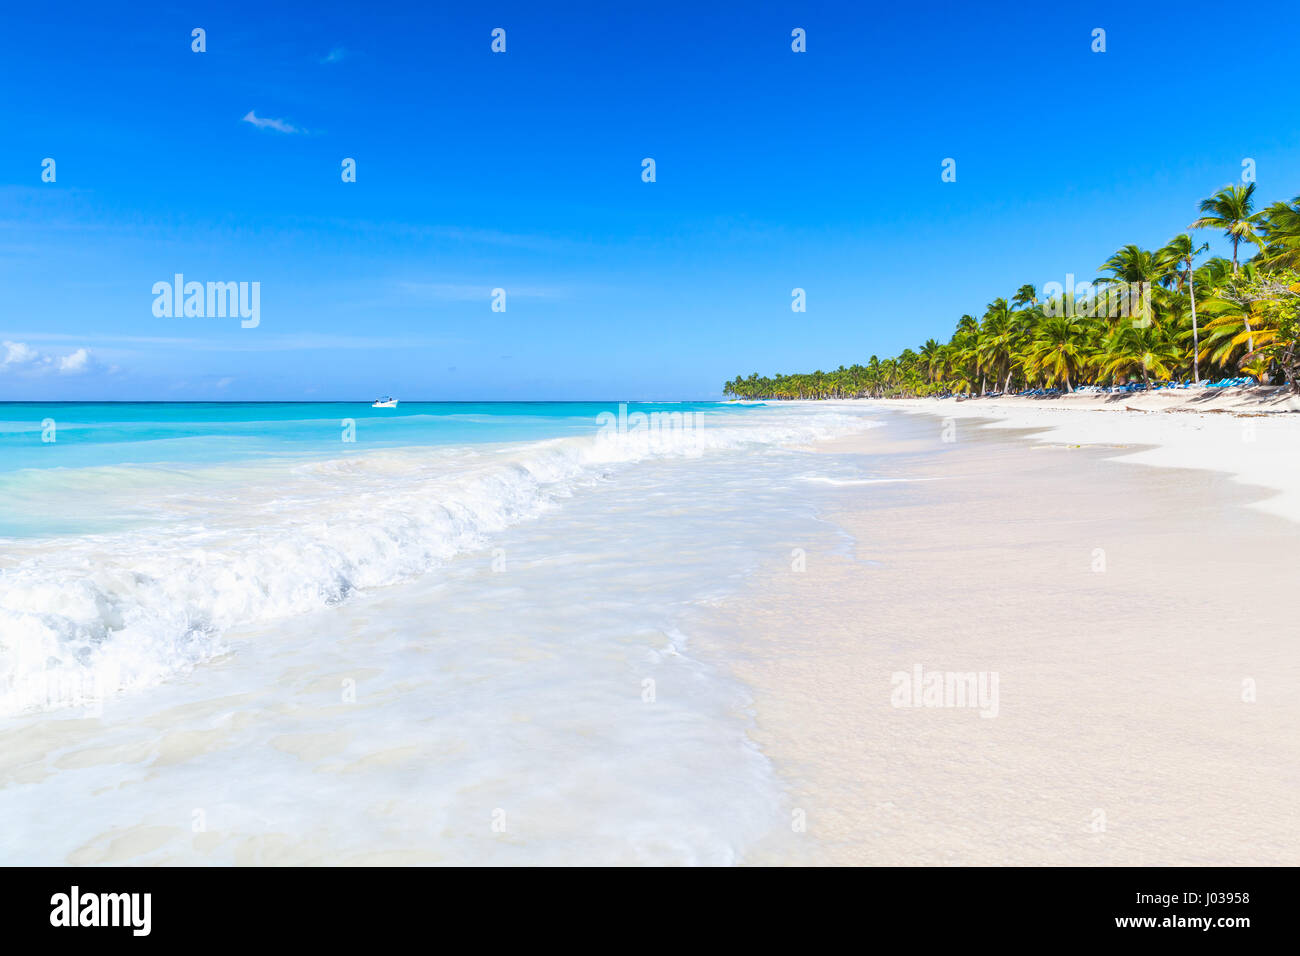 Gli alberi di palma crescono sulla spiaggia di sabbia bianca. Mar dei Caraibi, Repubblica dominicana, Saona Island coast, popolare località turistica Foto Stock